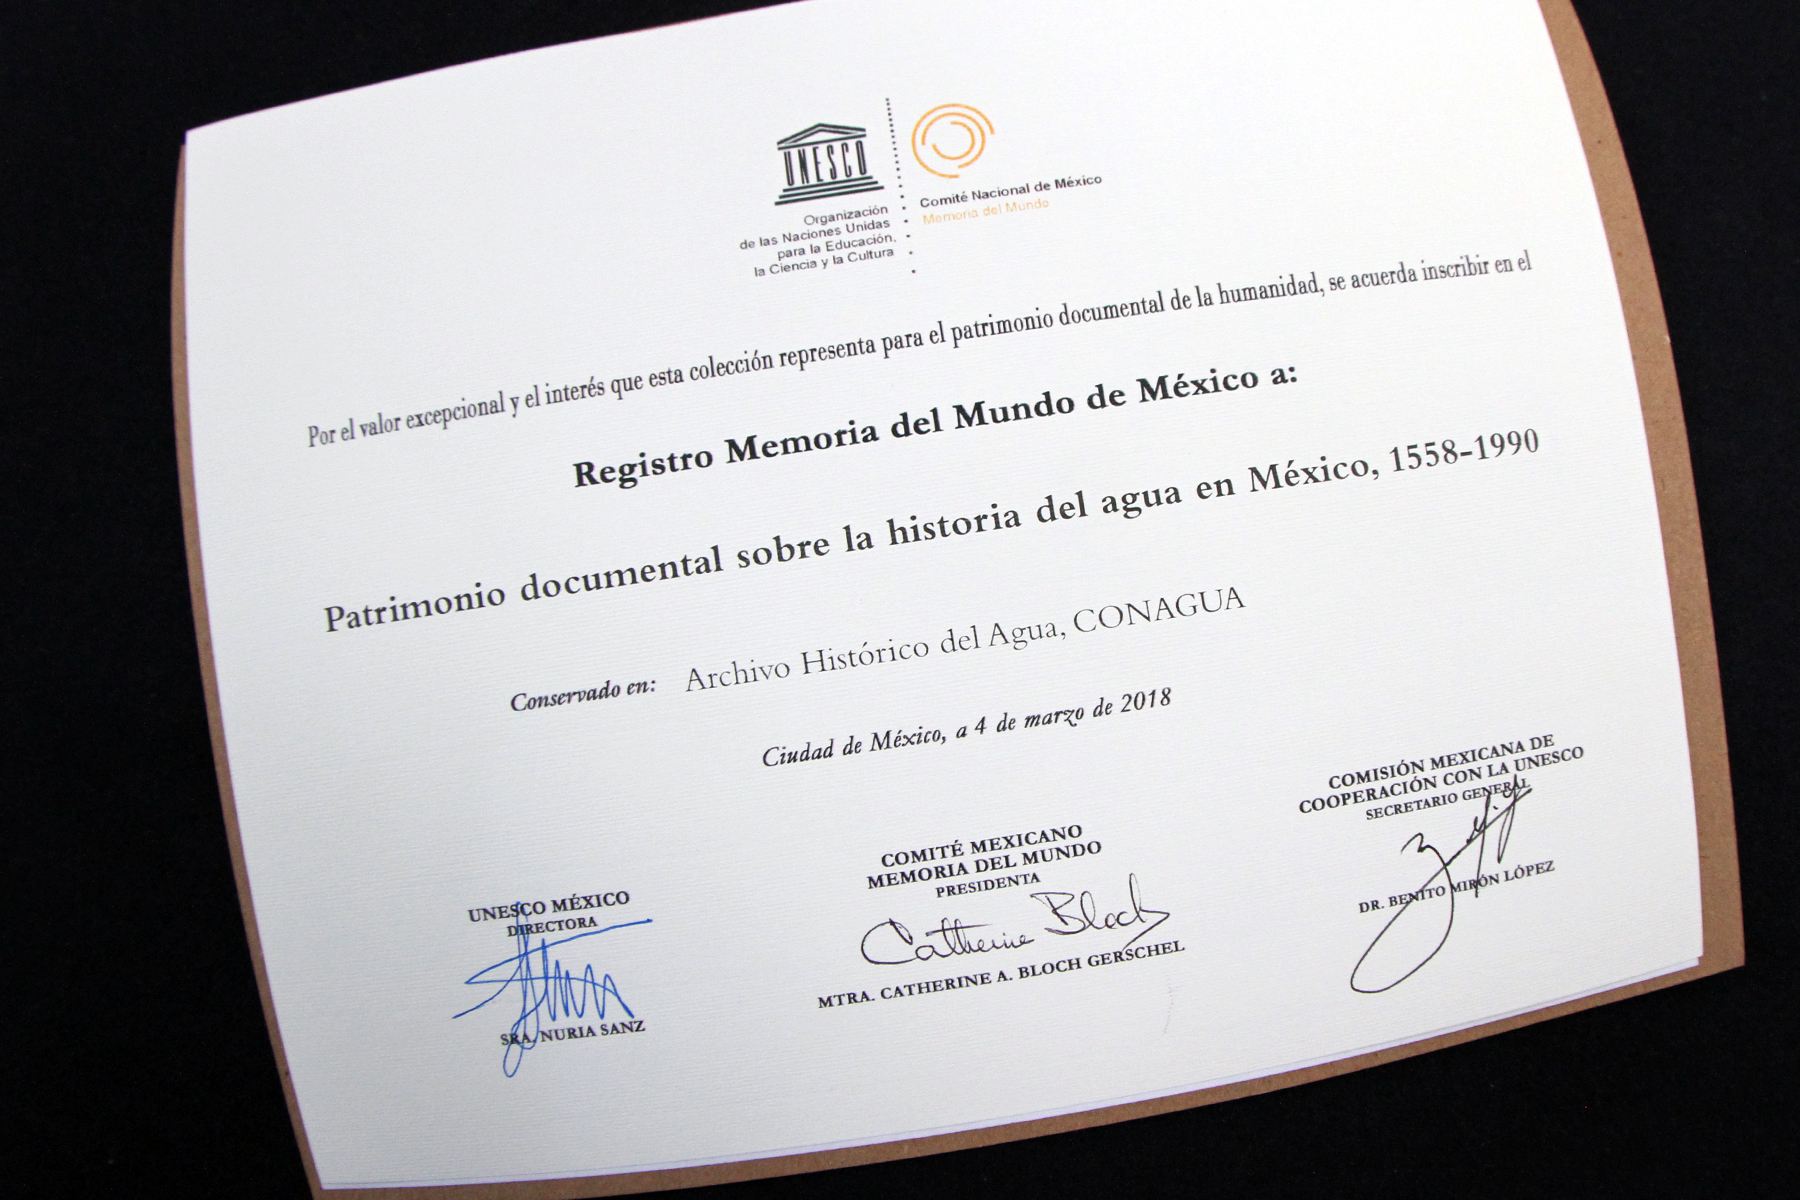 El patrimonio documental sobre la historia del agua en México, 1558-1990, está resguardado en el Archivo Histórico del Agua.